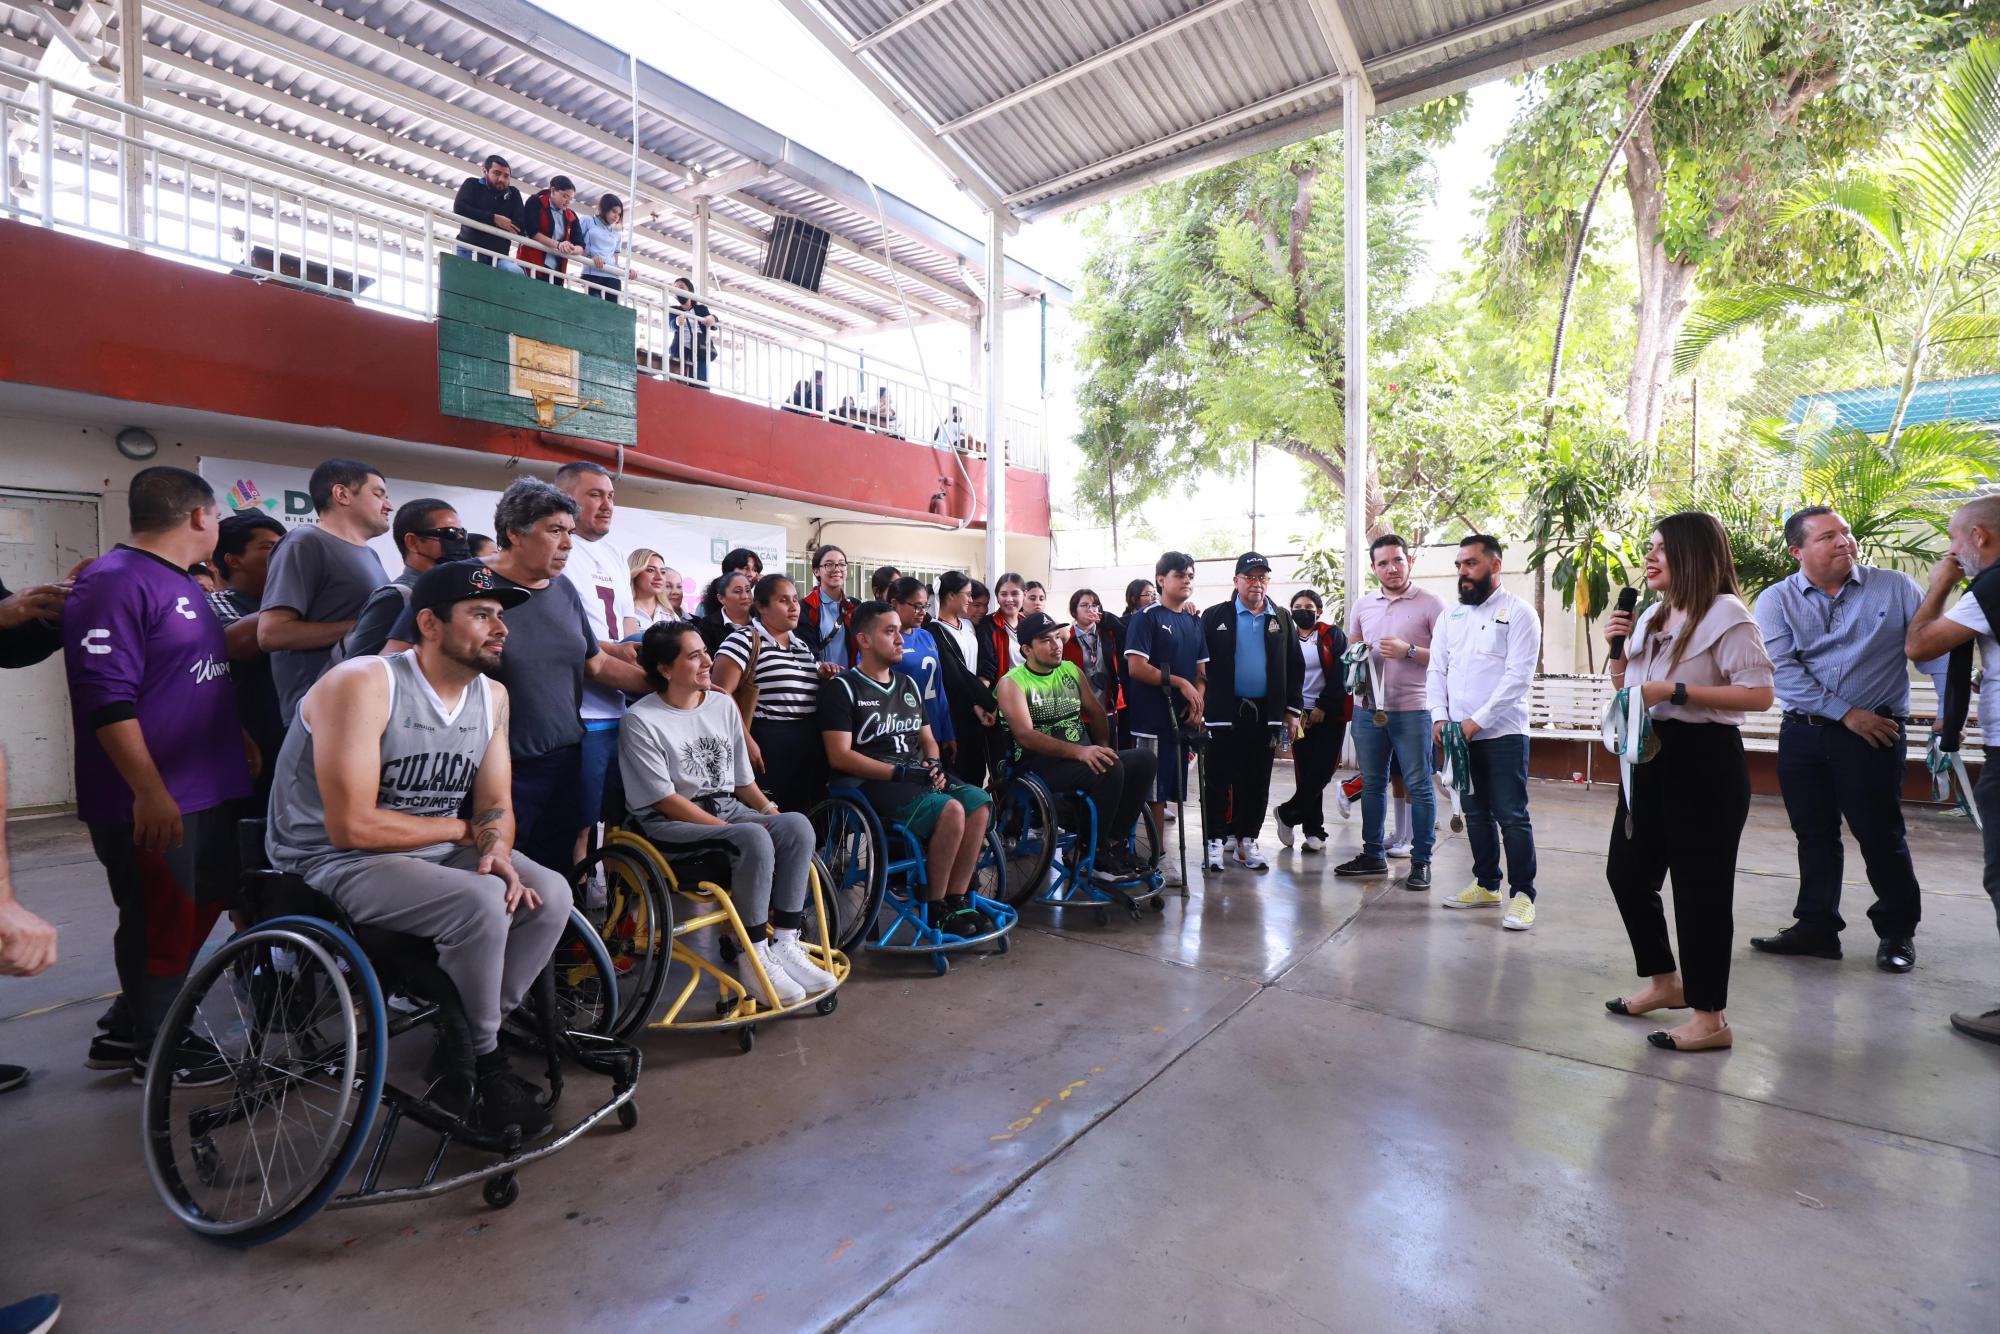 $!A través de Somos Inclusión, promueve DIF Culiacán el deporte adaptado